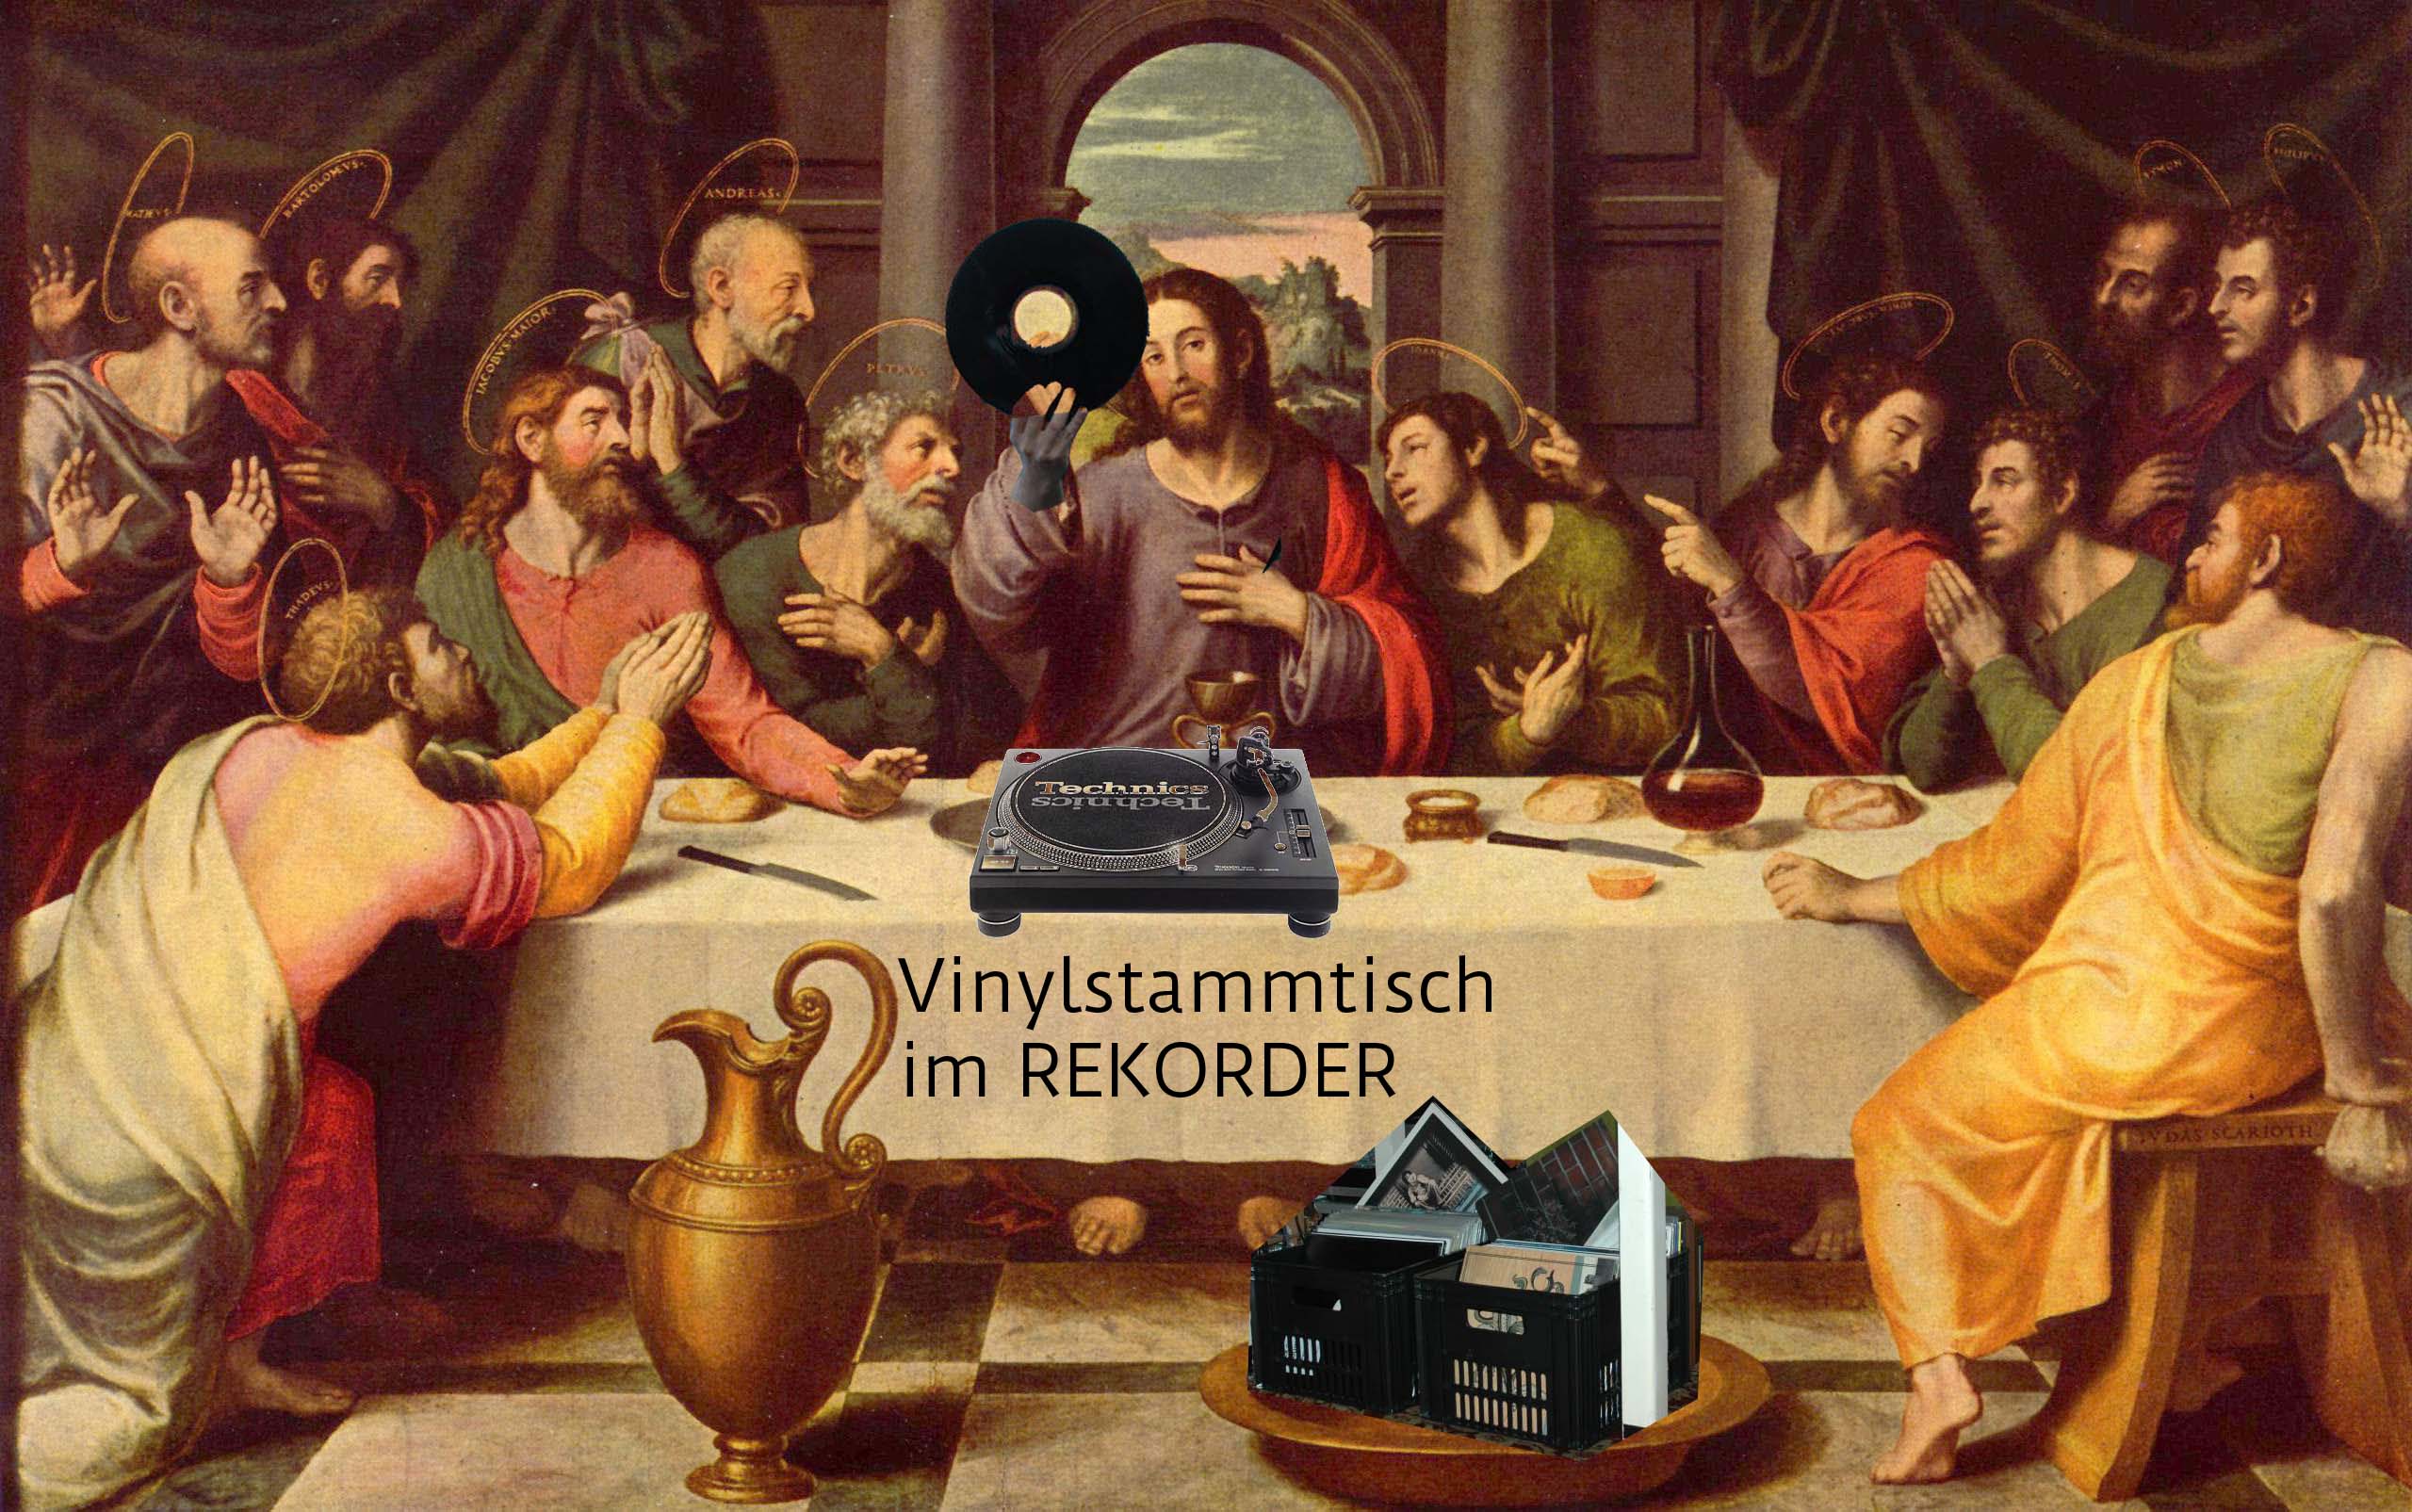 Vinylstammtisch